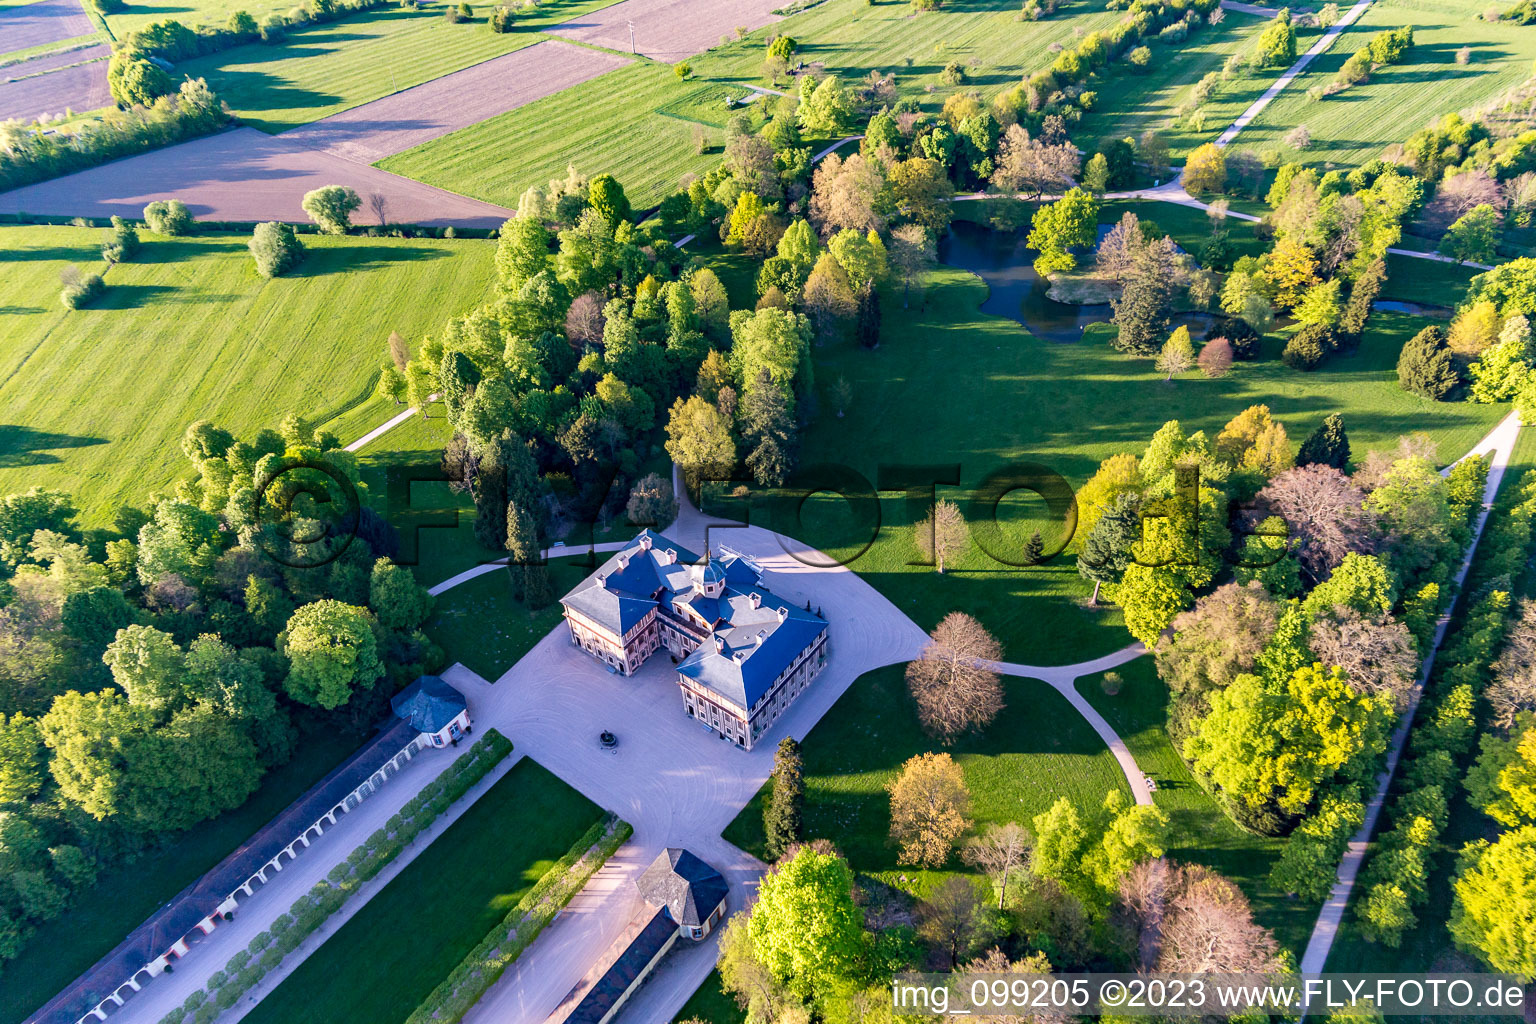 Schloß Favorite bei Förch in Rastatt im Bundesland Baden-Württemberg, Deutschland aus der Luft betrachtet